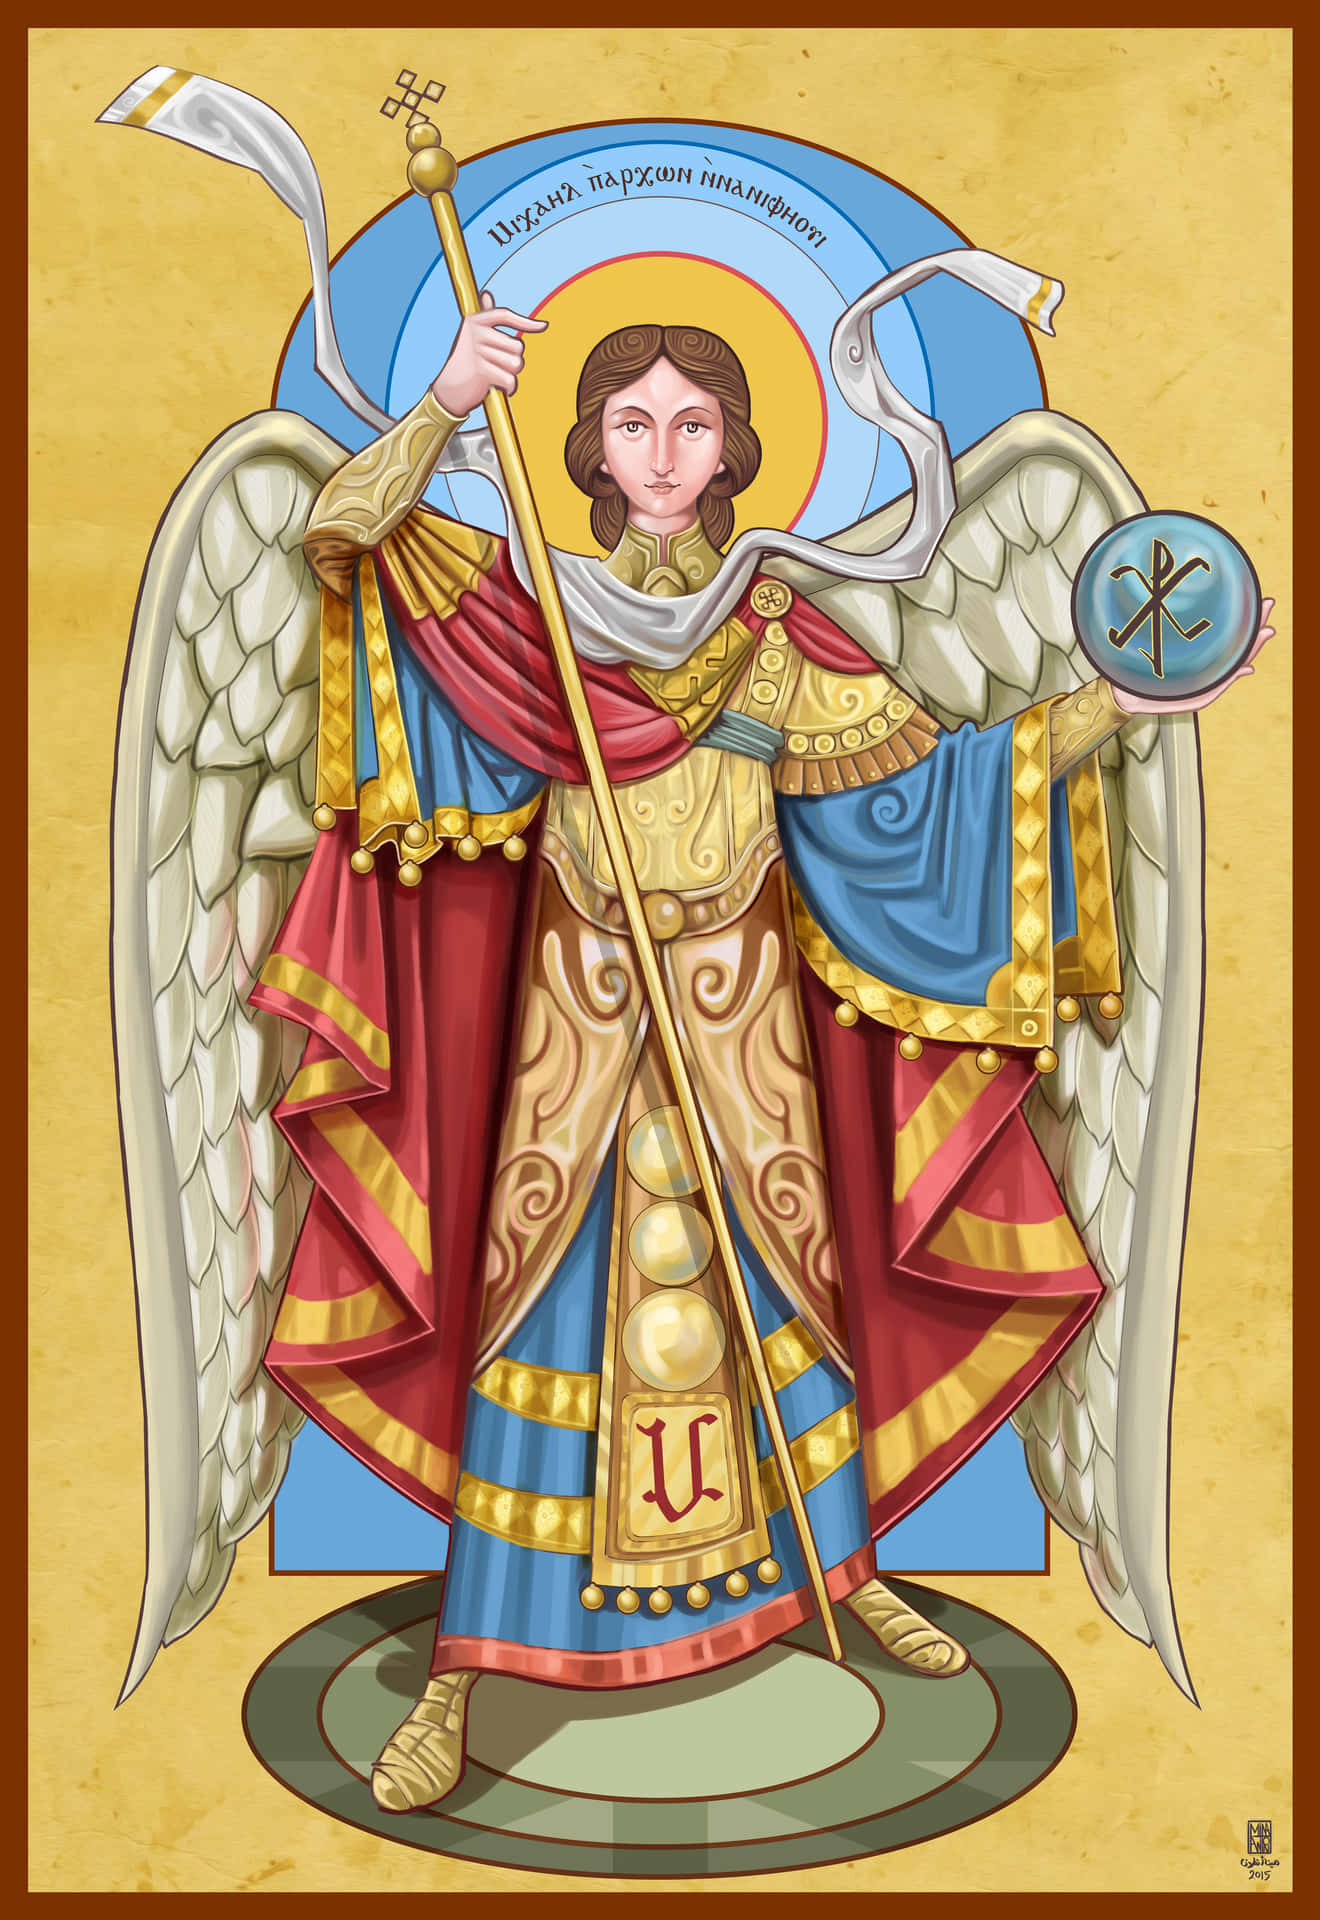 Archangel Saint Michael guarding the gates of Heaven